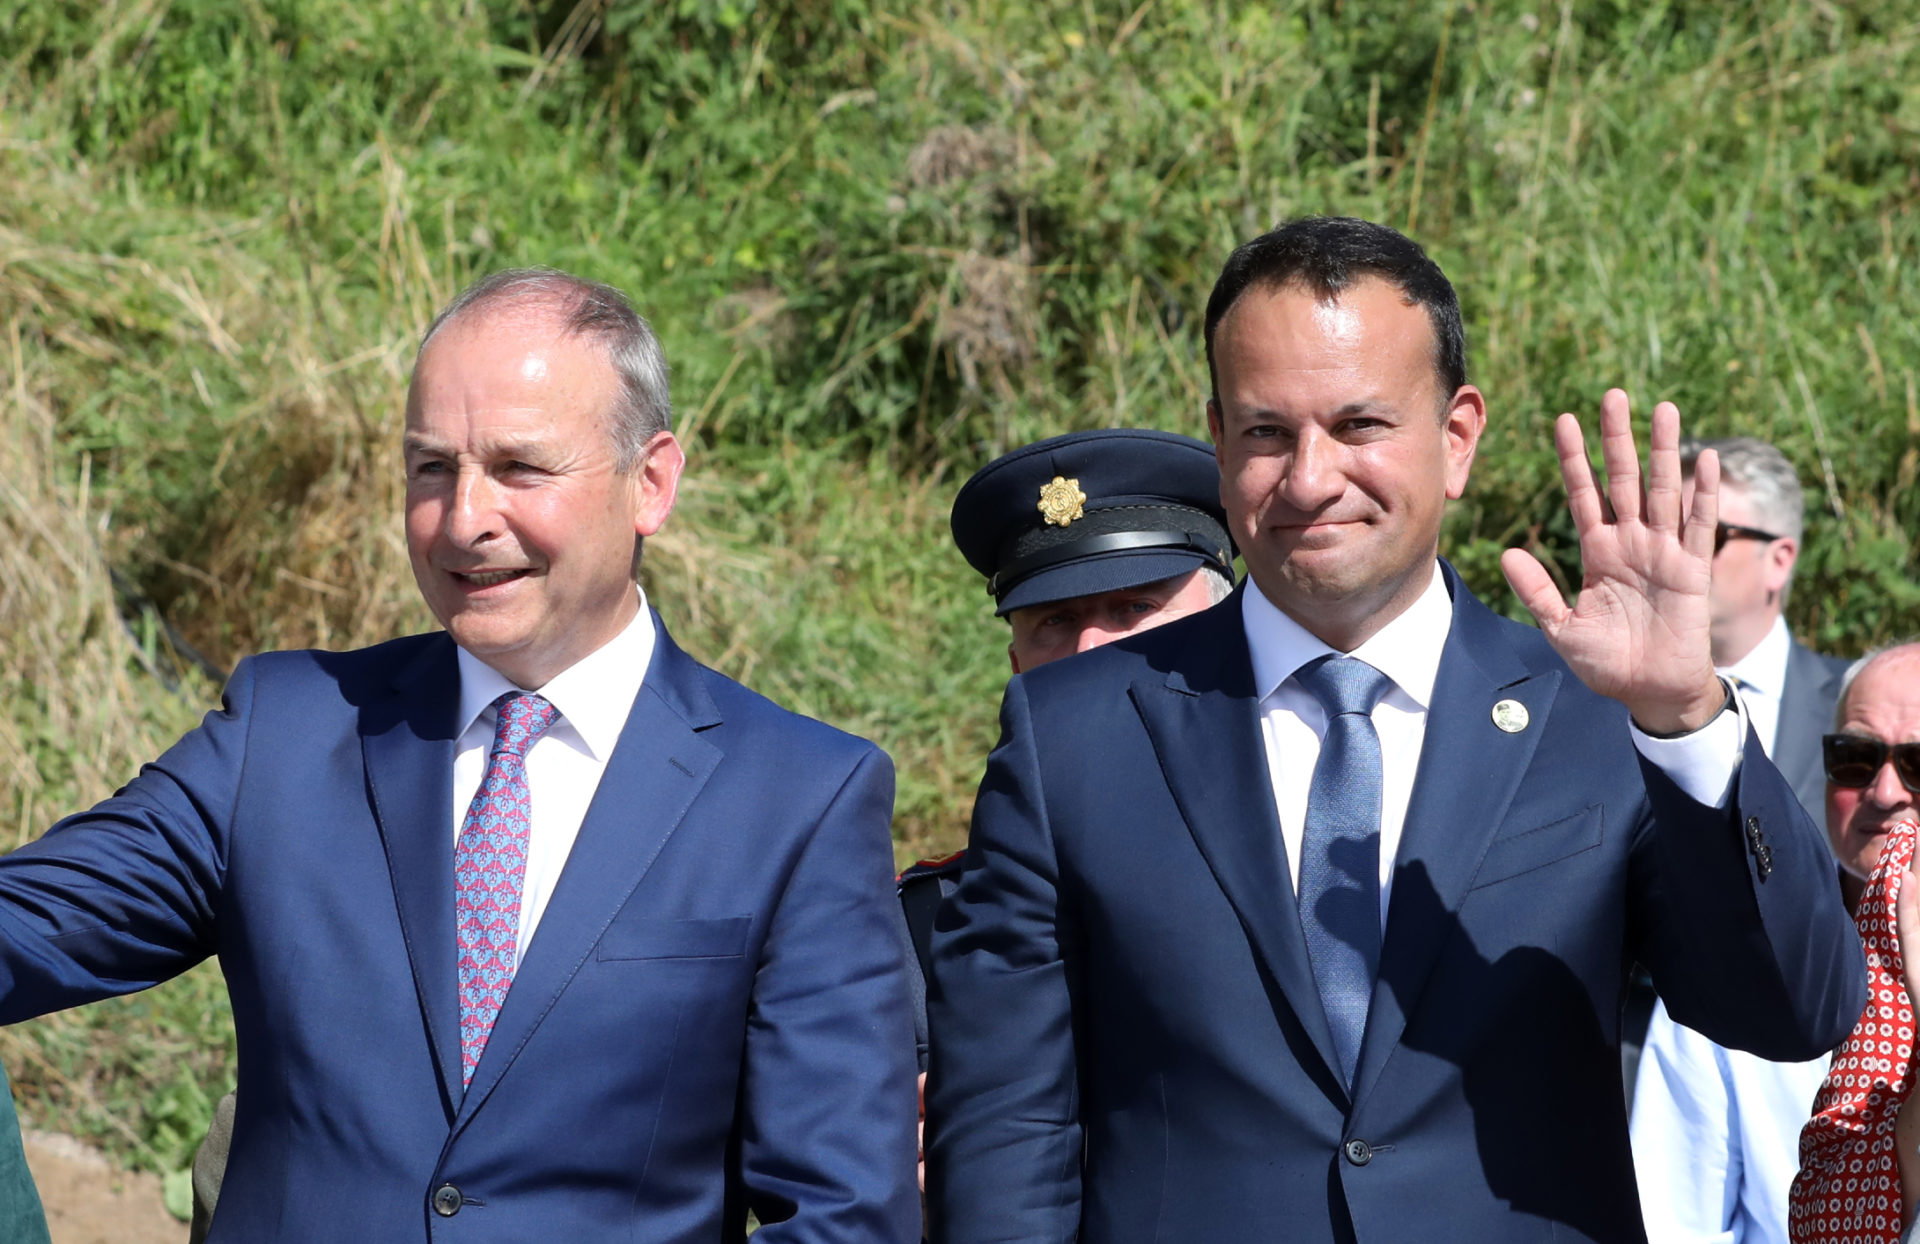 The Taoiseach Micheál Martin and Tánaiste Leo Varadkar.